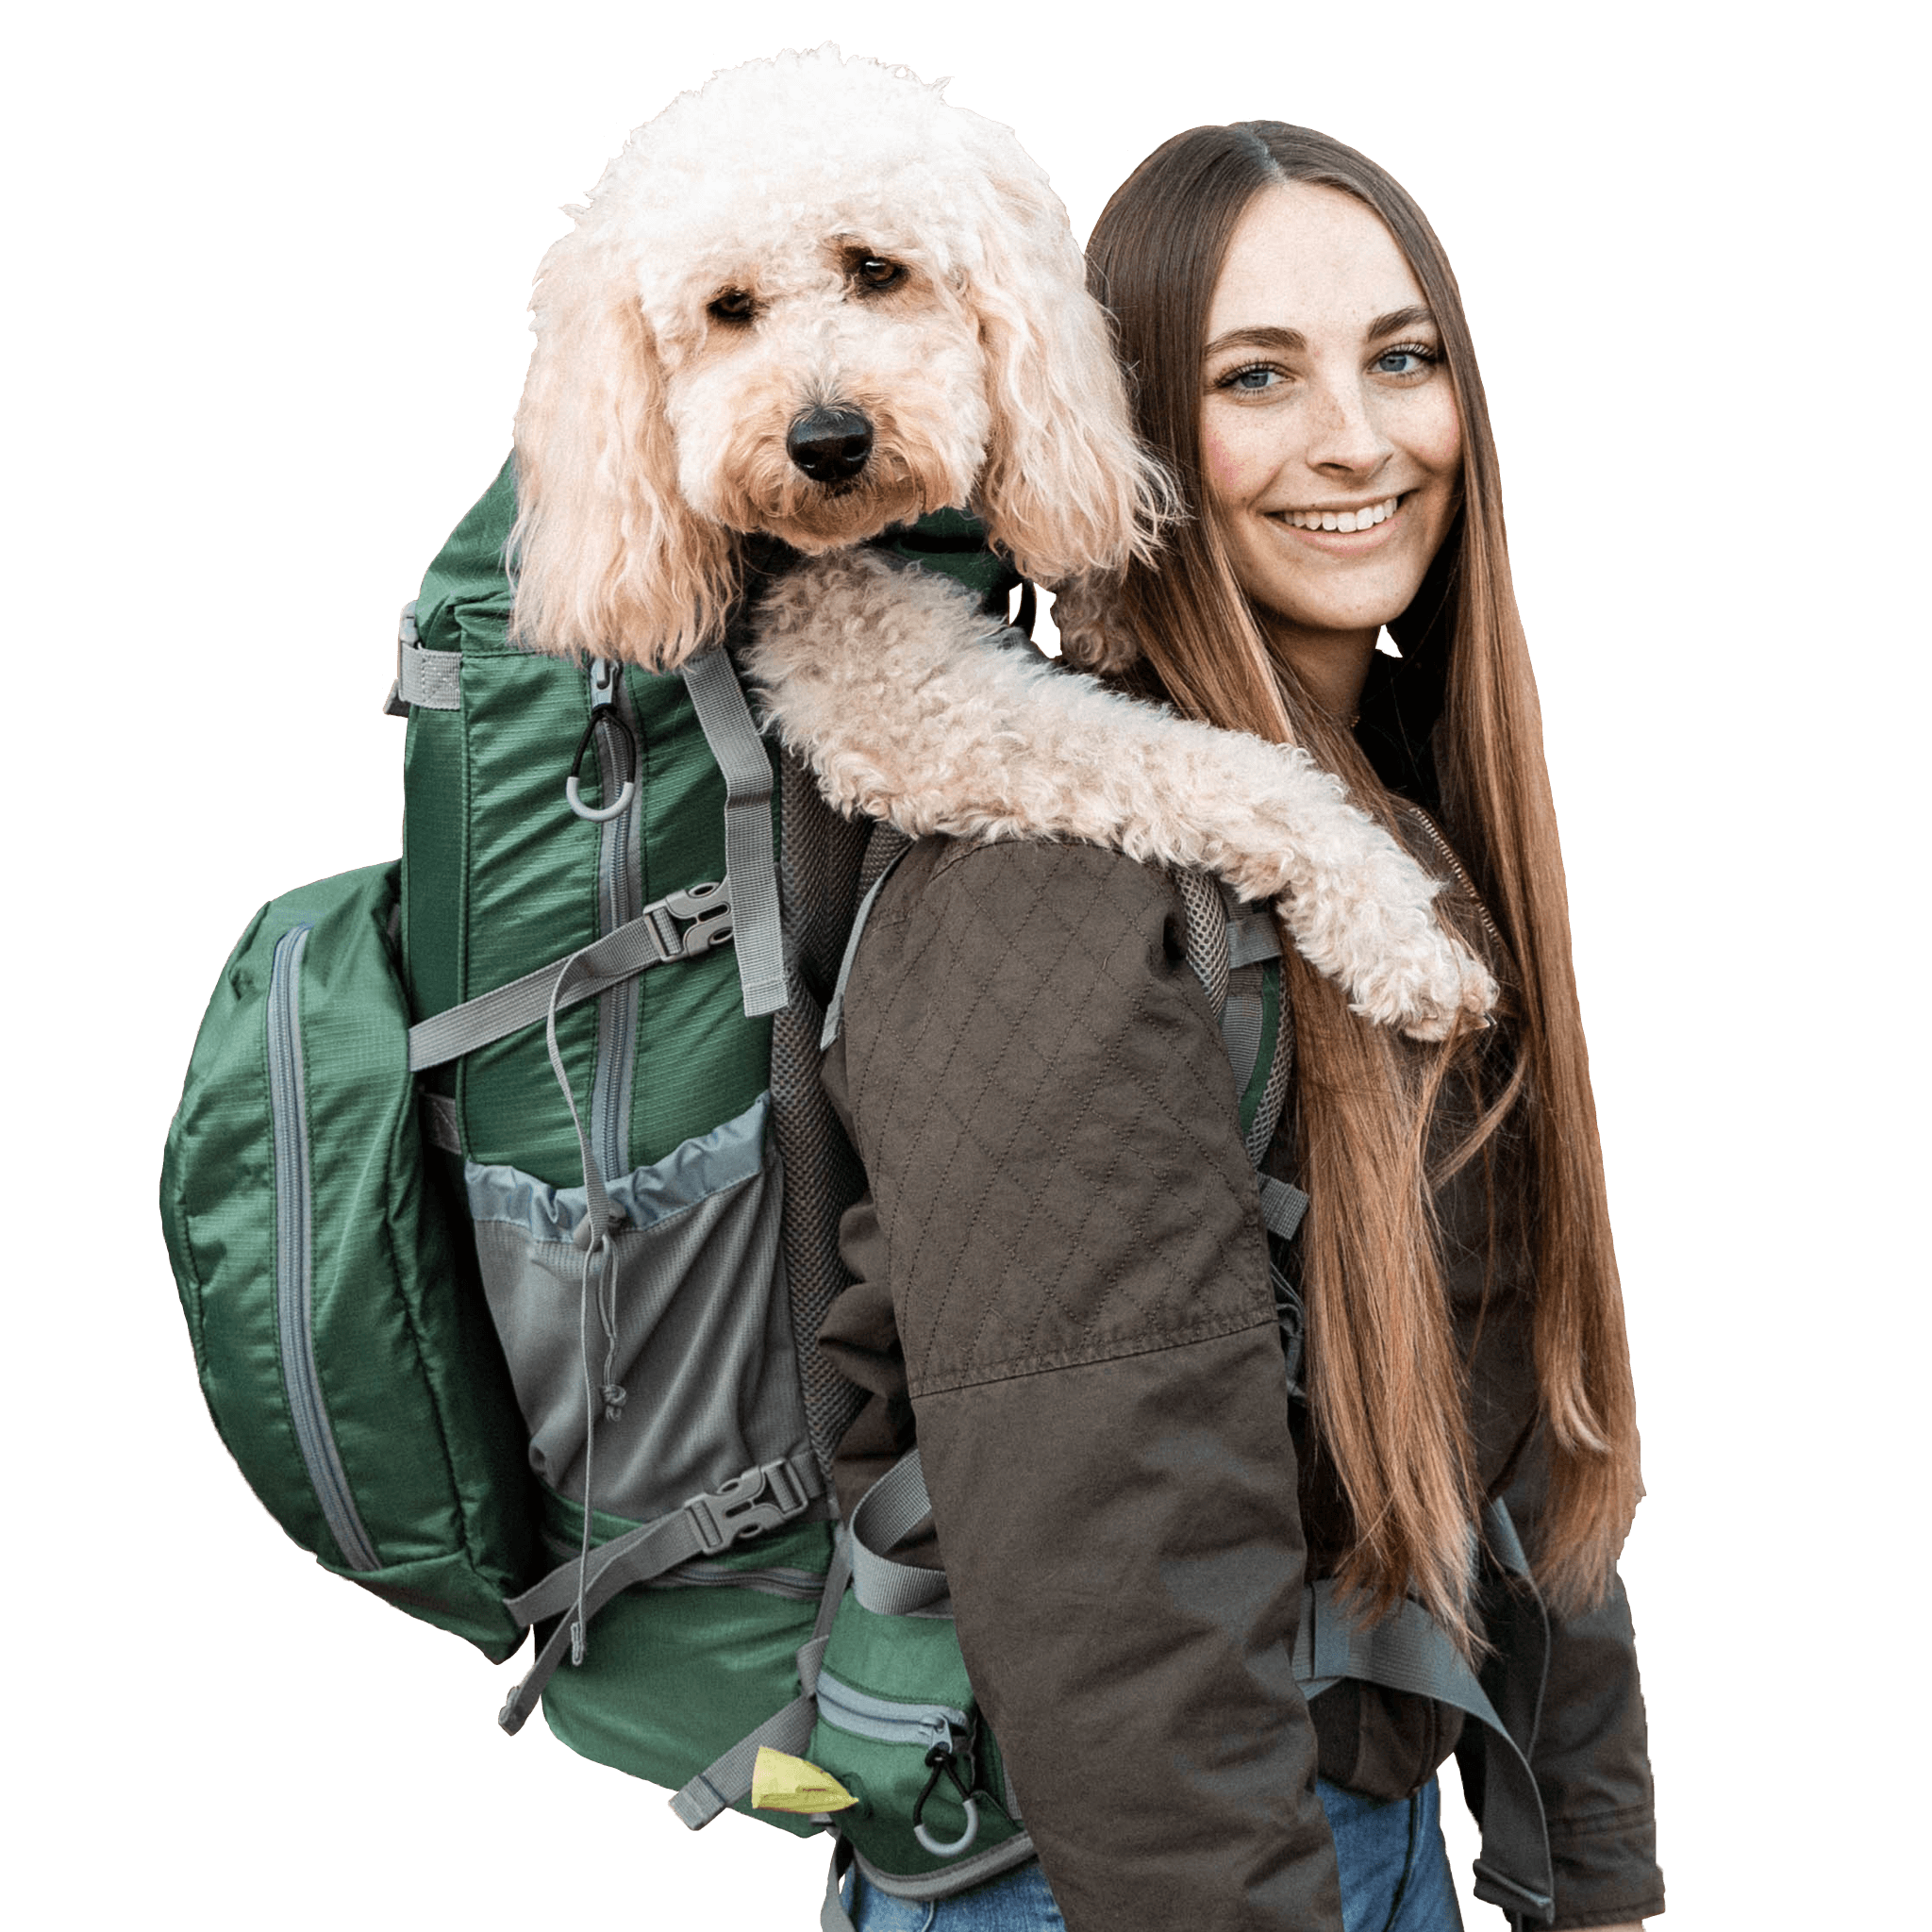 Are Dog Carrier Backpacks Safe